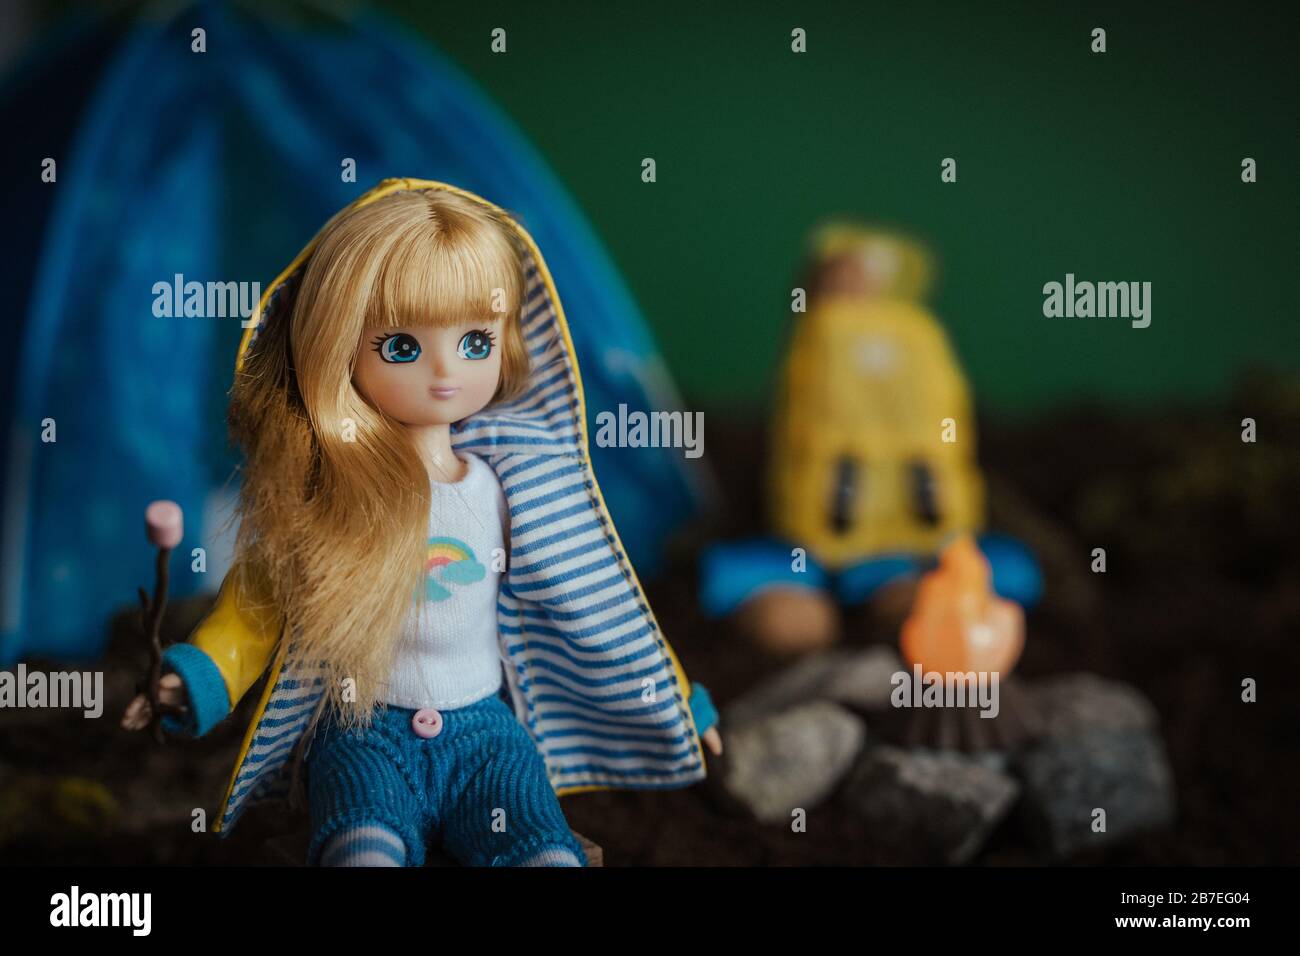 Nahaufnahme einer niedlichen Wanderpuppe mit blonden Haaren Mit einem Toy Bonfire im Hintergrund Stockfoto